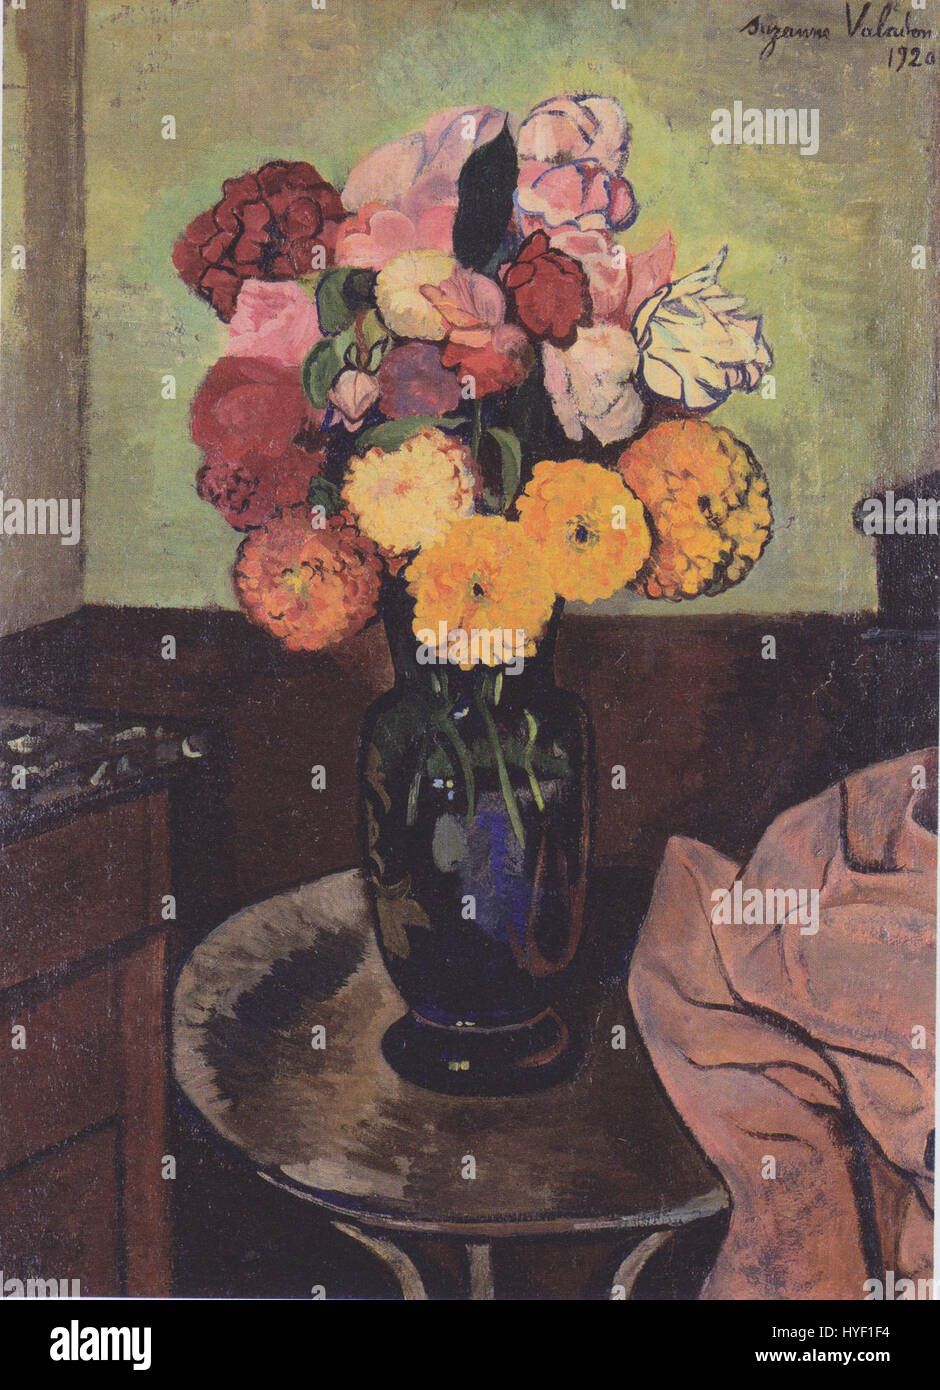 Suzanne Valadon   Blumenvase auf einem runden Tisch   1920 Stock Photo